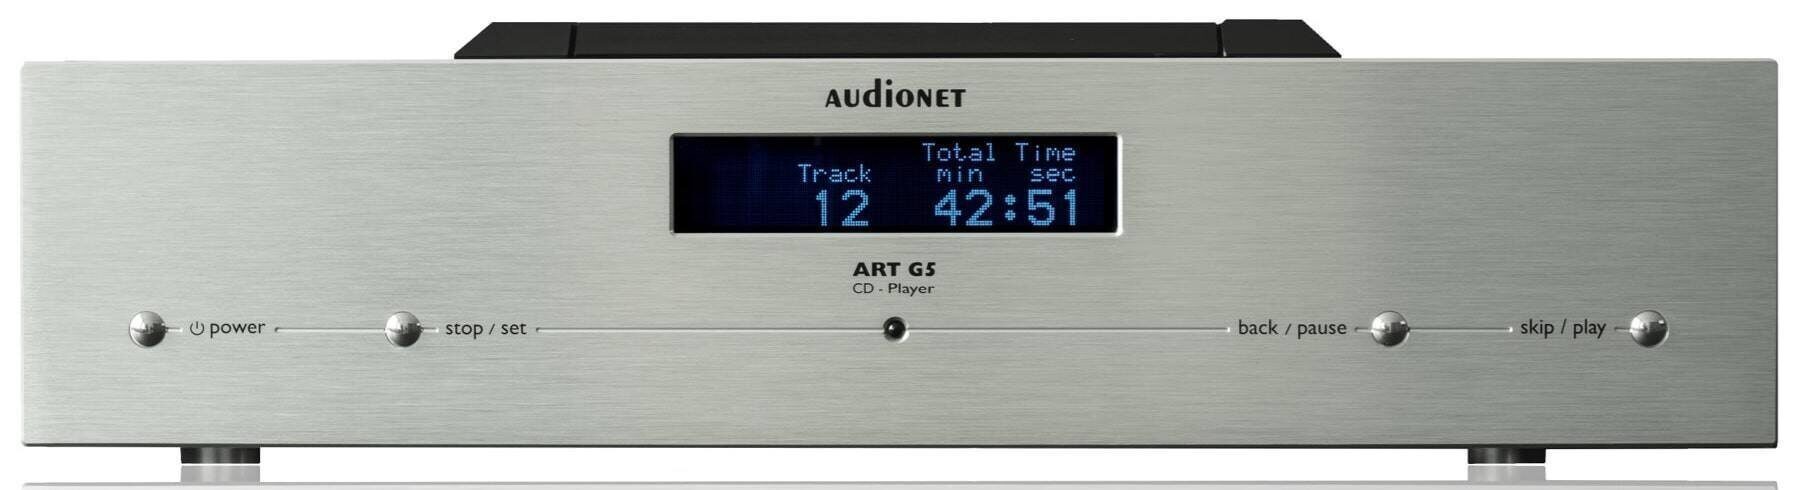 Тест Audionet PLANCK2 и Art G5